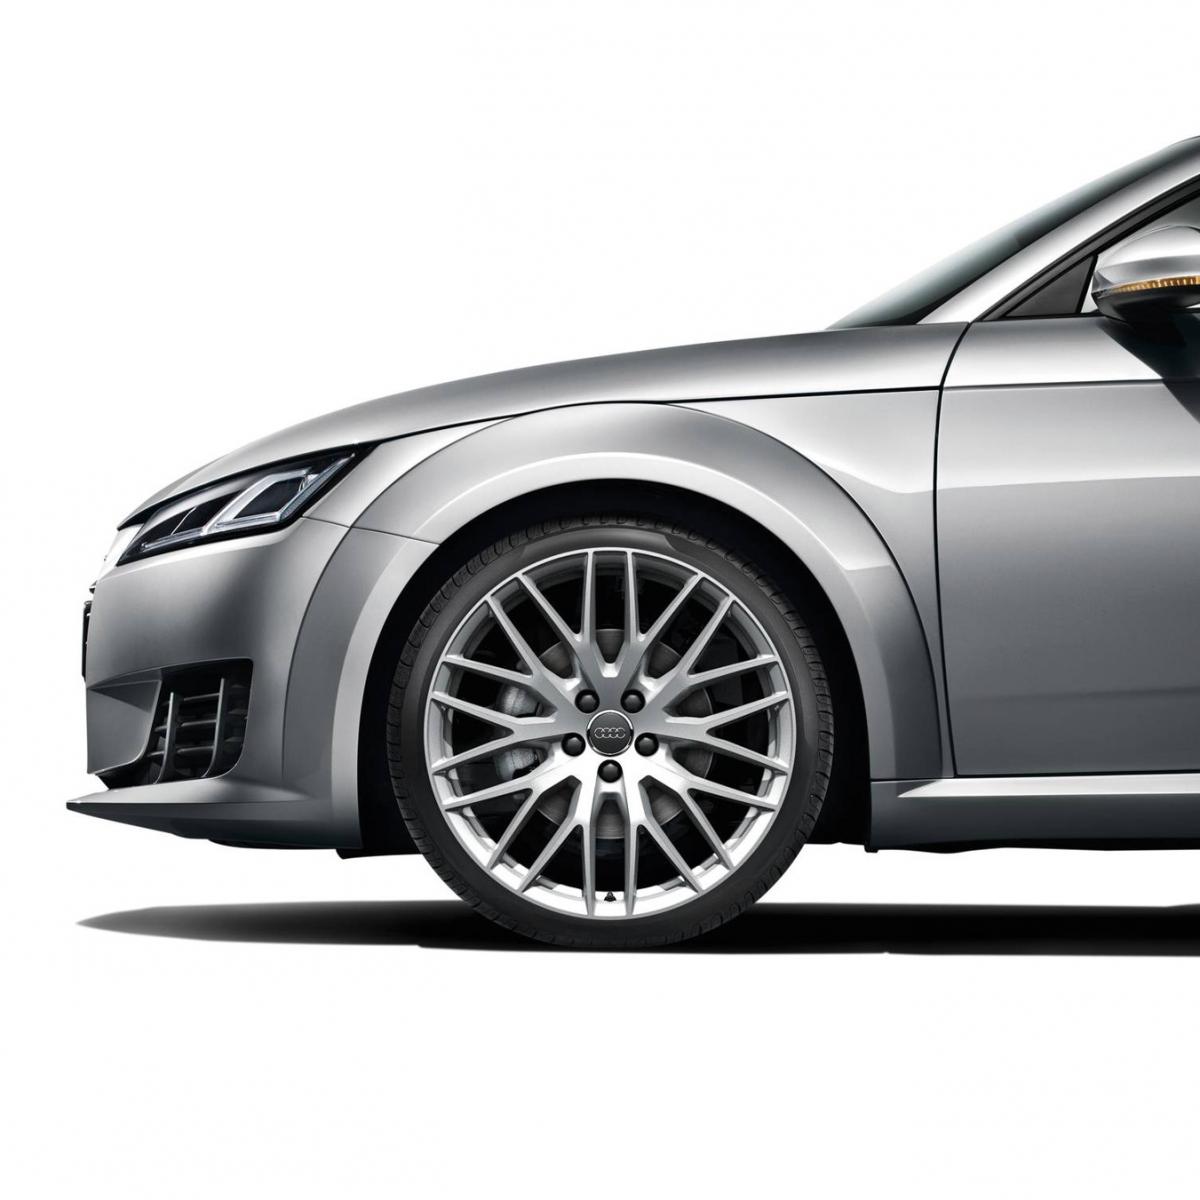 公式 Audi Online Shop 10スポークyデザインアルミホイール 9j 255 30 Rタイヤコンプリート Audi Tt